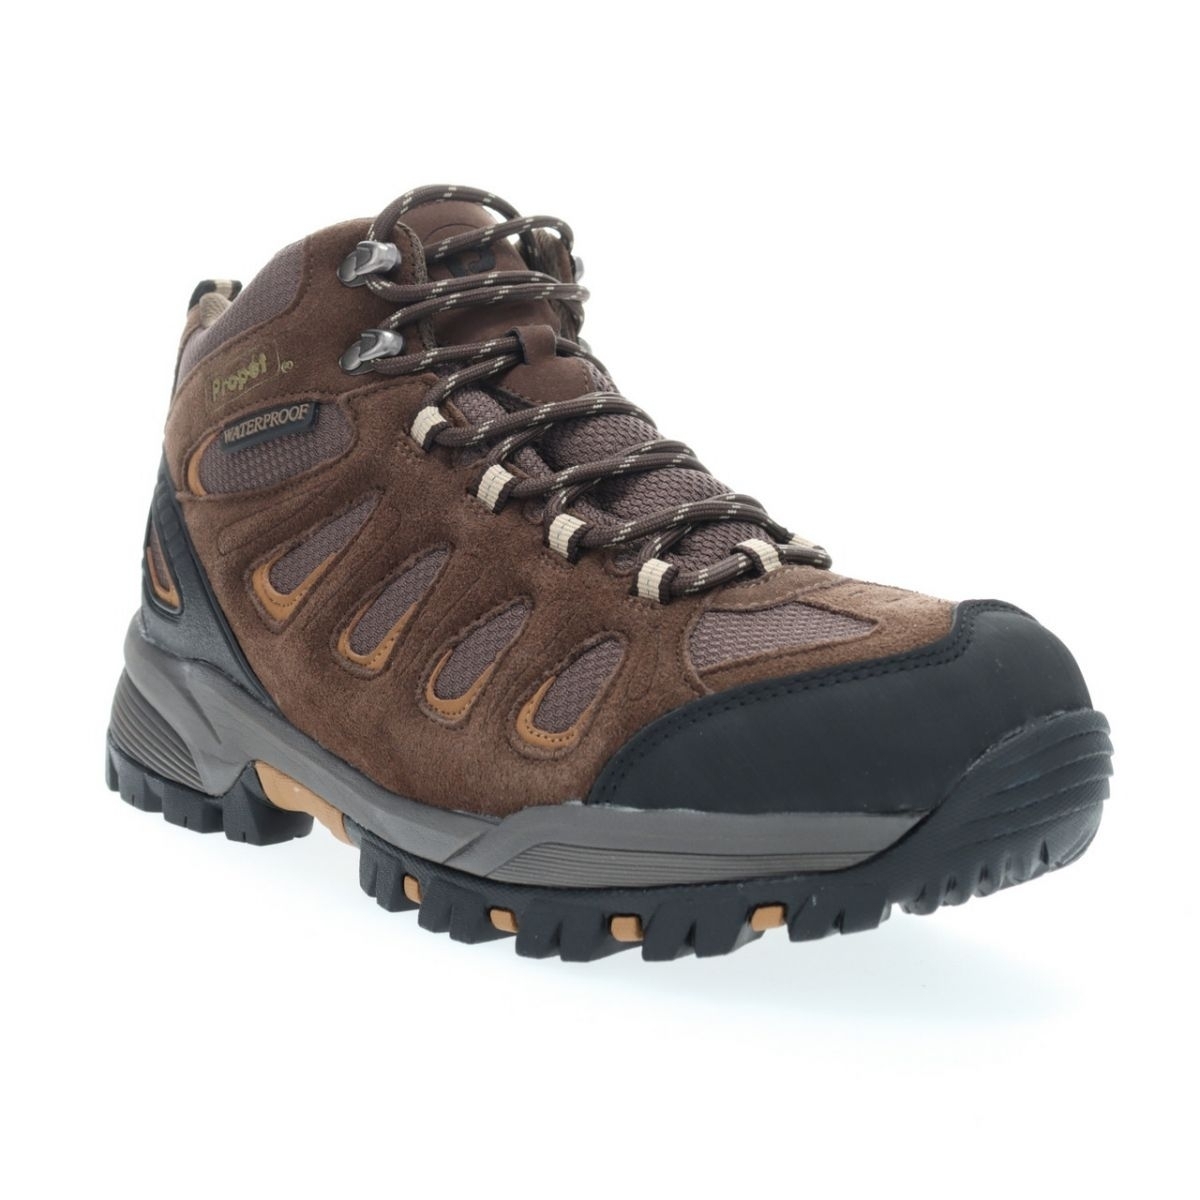 Propet Men's Ridge Walker Hiking Boot Brown - M3599BR 8 XX US Men BROWN - BROWN, 14 X-Wide